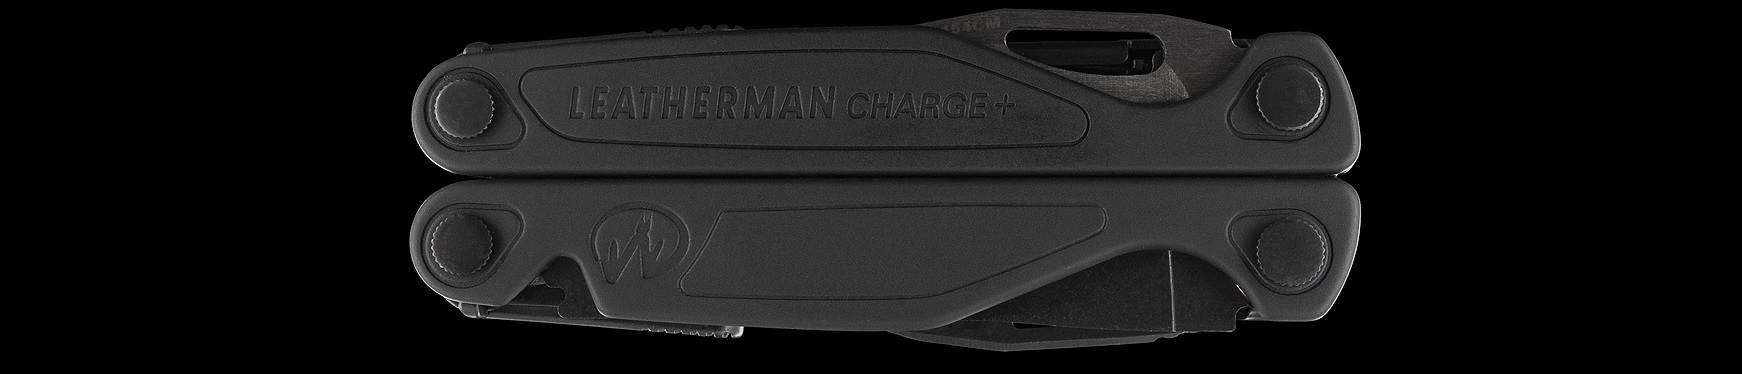 Мультиінструмент Leatherman Charge Plus Black